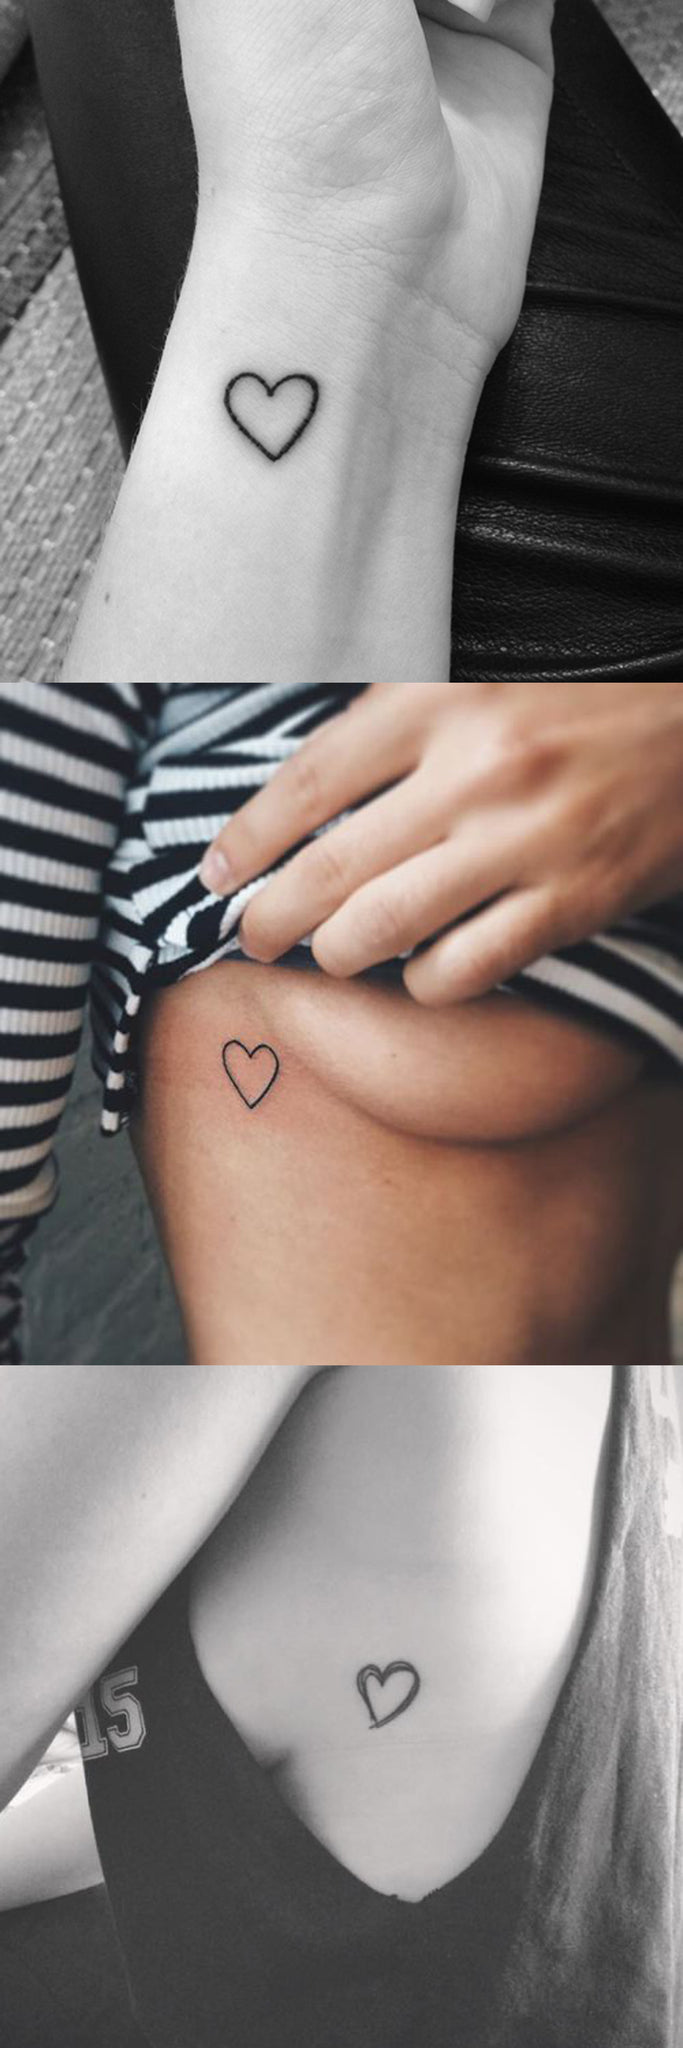 Simple Small Tattoo Ideas for Women - Heart Rib Tatt - Minimal Love Soul Wrist Tat at MyBodiArt.com